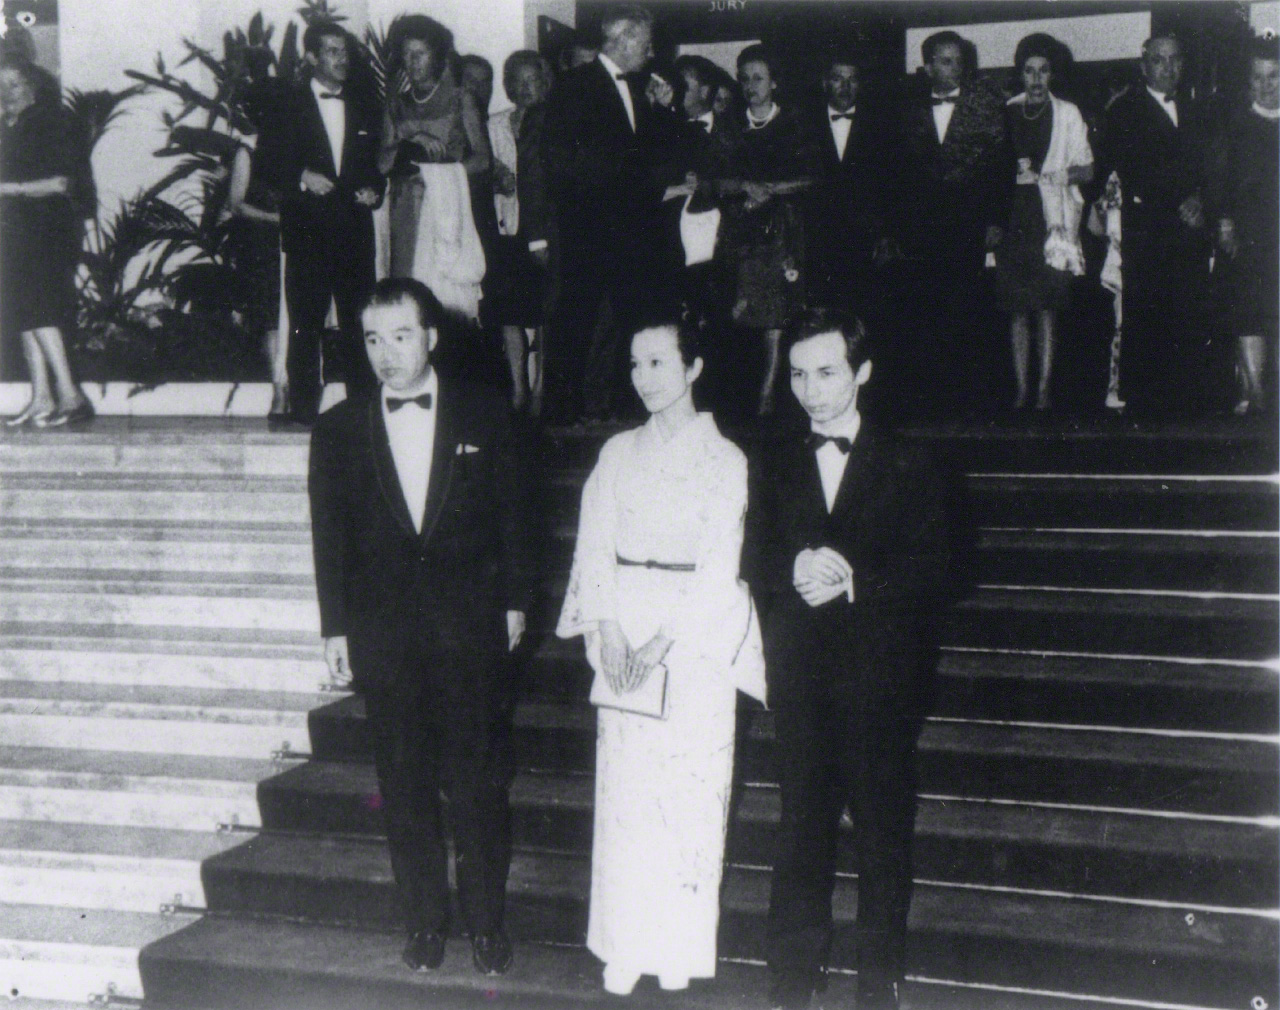 Récompense de Kwaidan au Festival international du film de Cannes en mai 1965 (prix spécial du jury). Takemitsu, qui en a composé la musique, était présent à la cérémonie, accompagné du réalisateur Kobayashi Masaki (à gauche) et de l'actrice Aratama Michiyo.